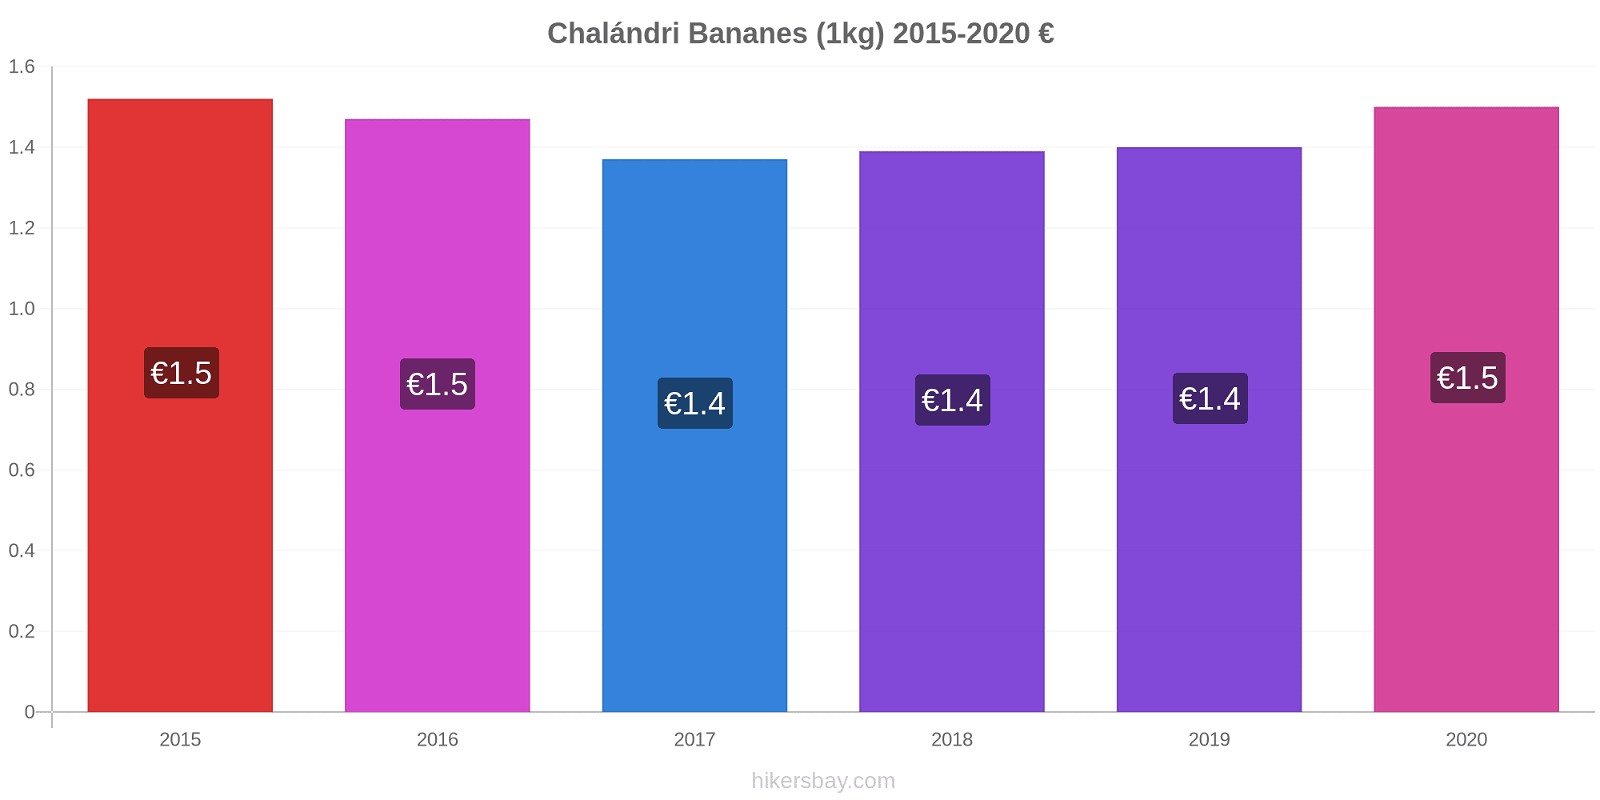 Chalándri changements de prix Bananes (1kg) hikersbay.com